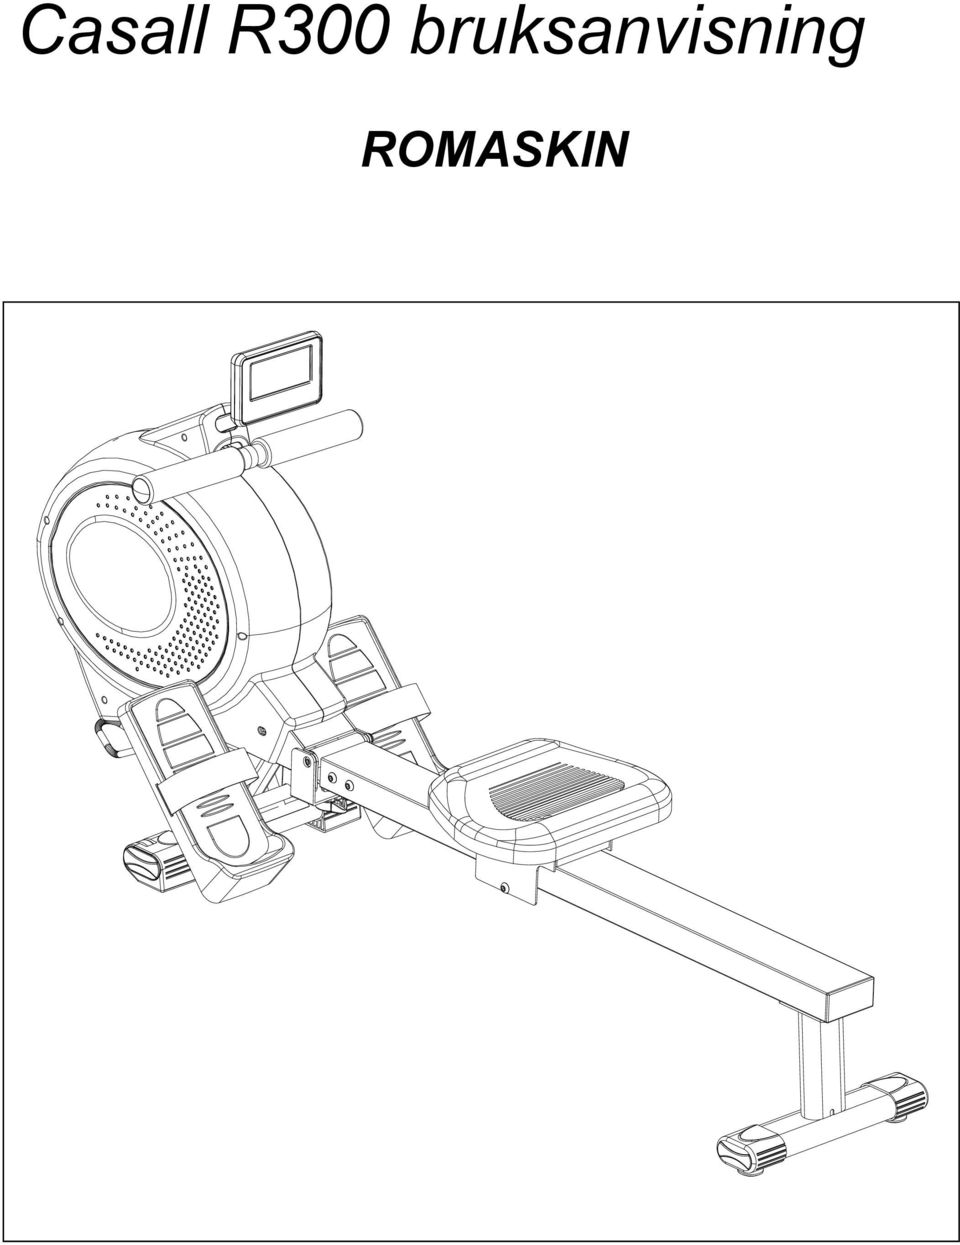 Casall R300 bruksanvisning ROMASKIN - PDF Gratis nedlasting